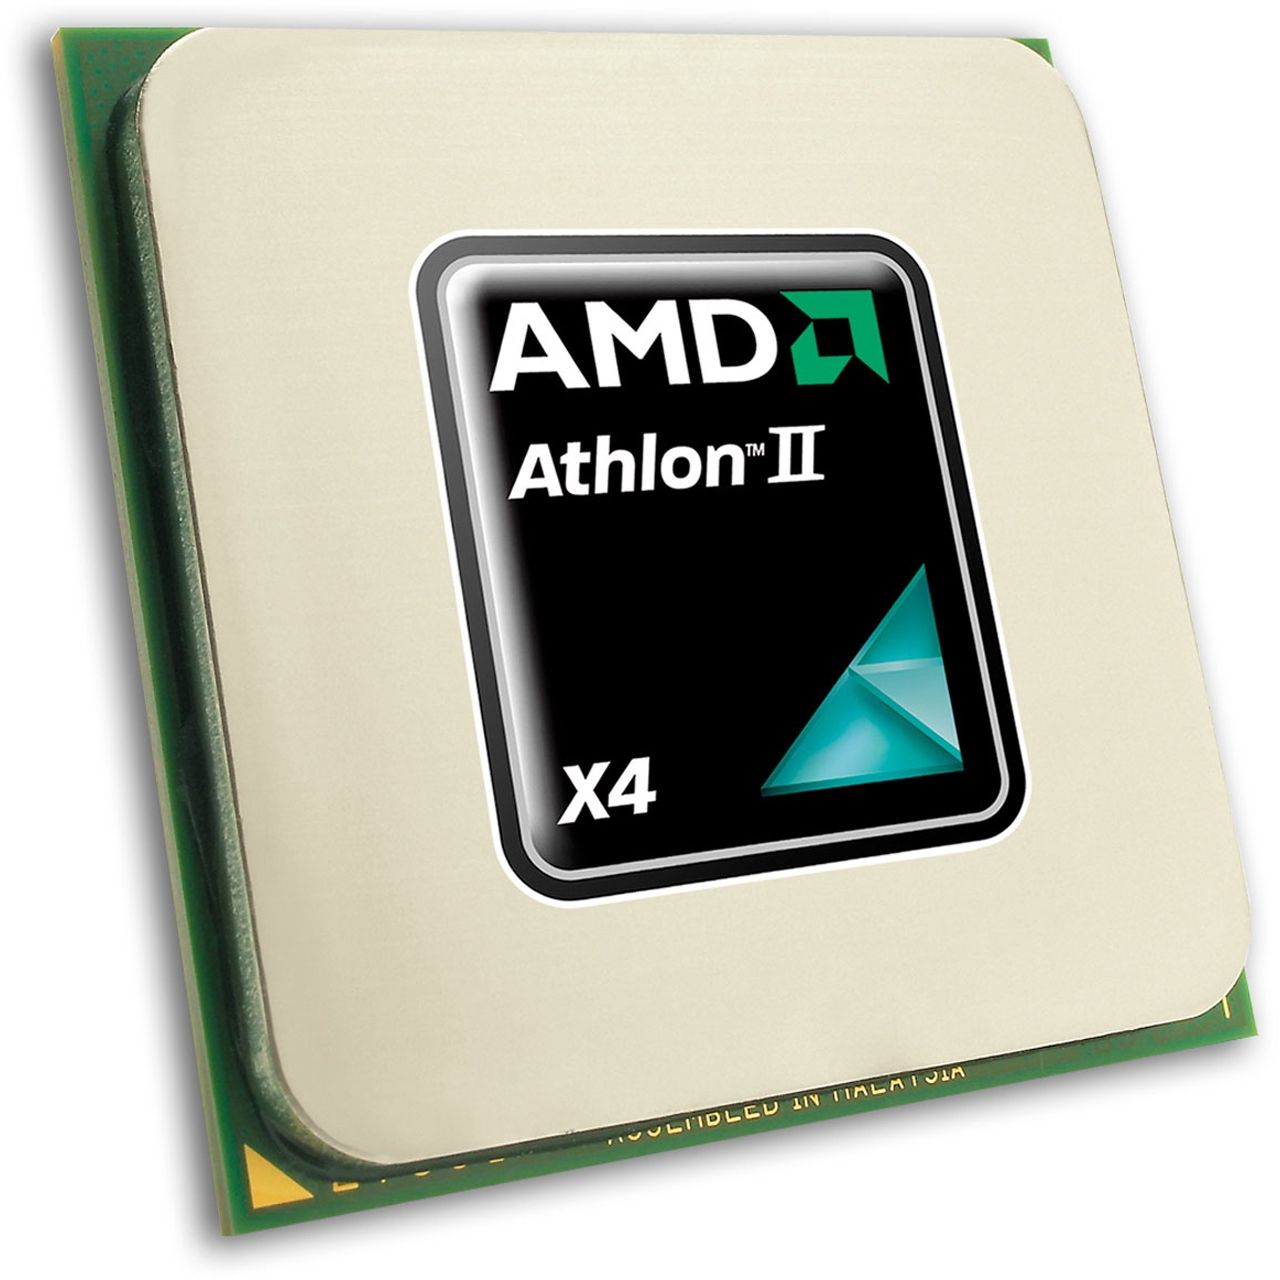 amd athlon 2 x4 630